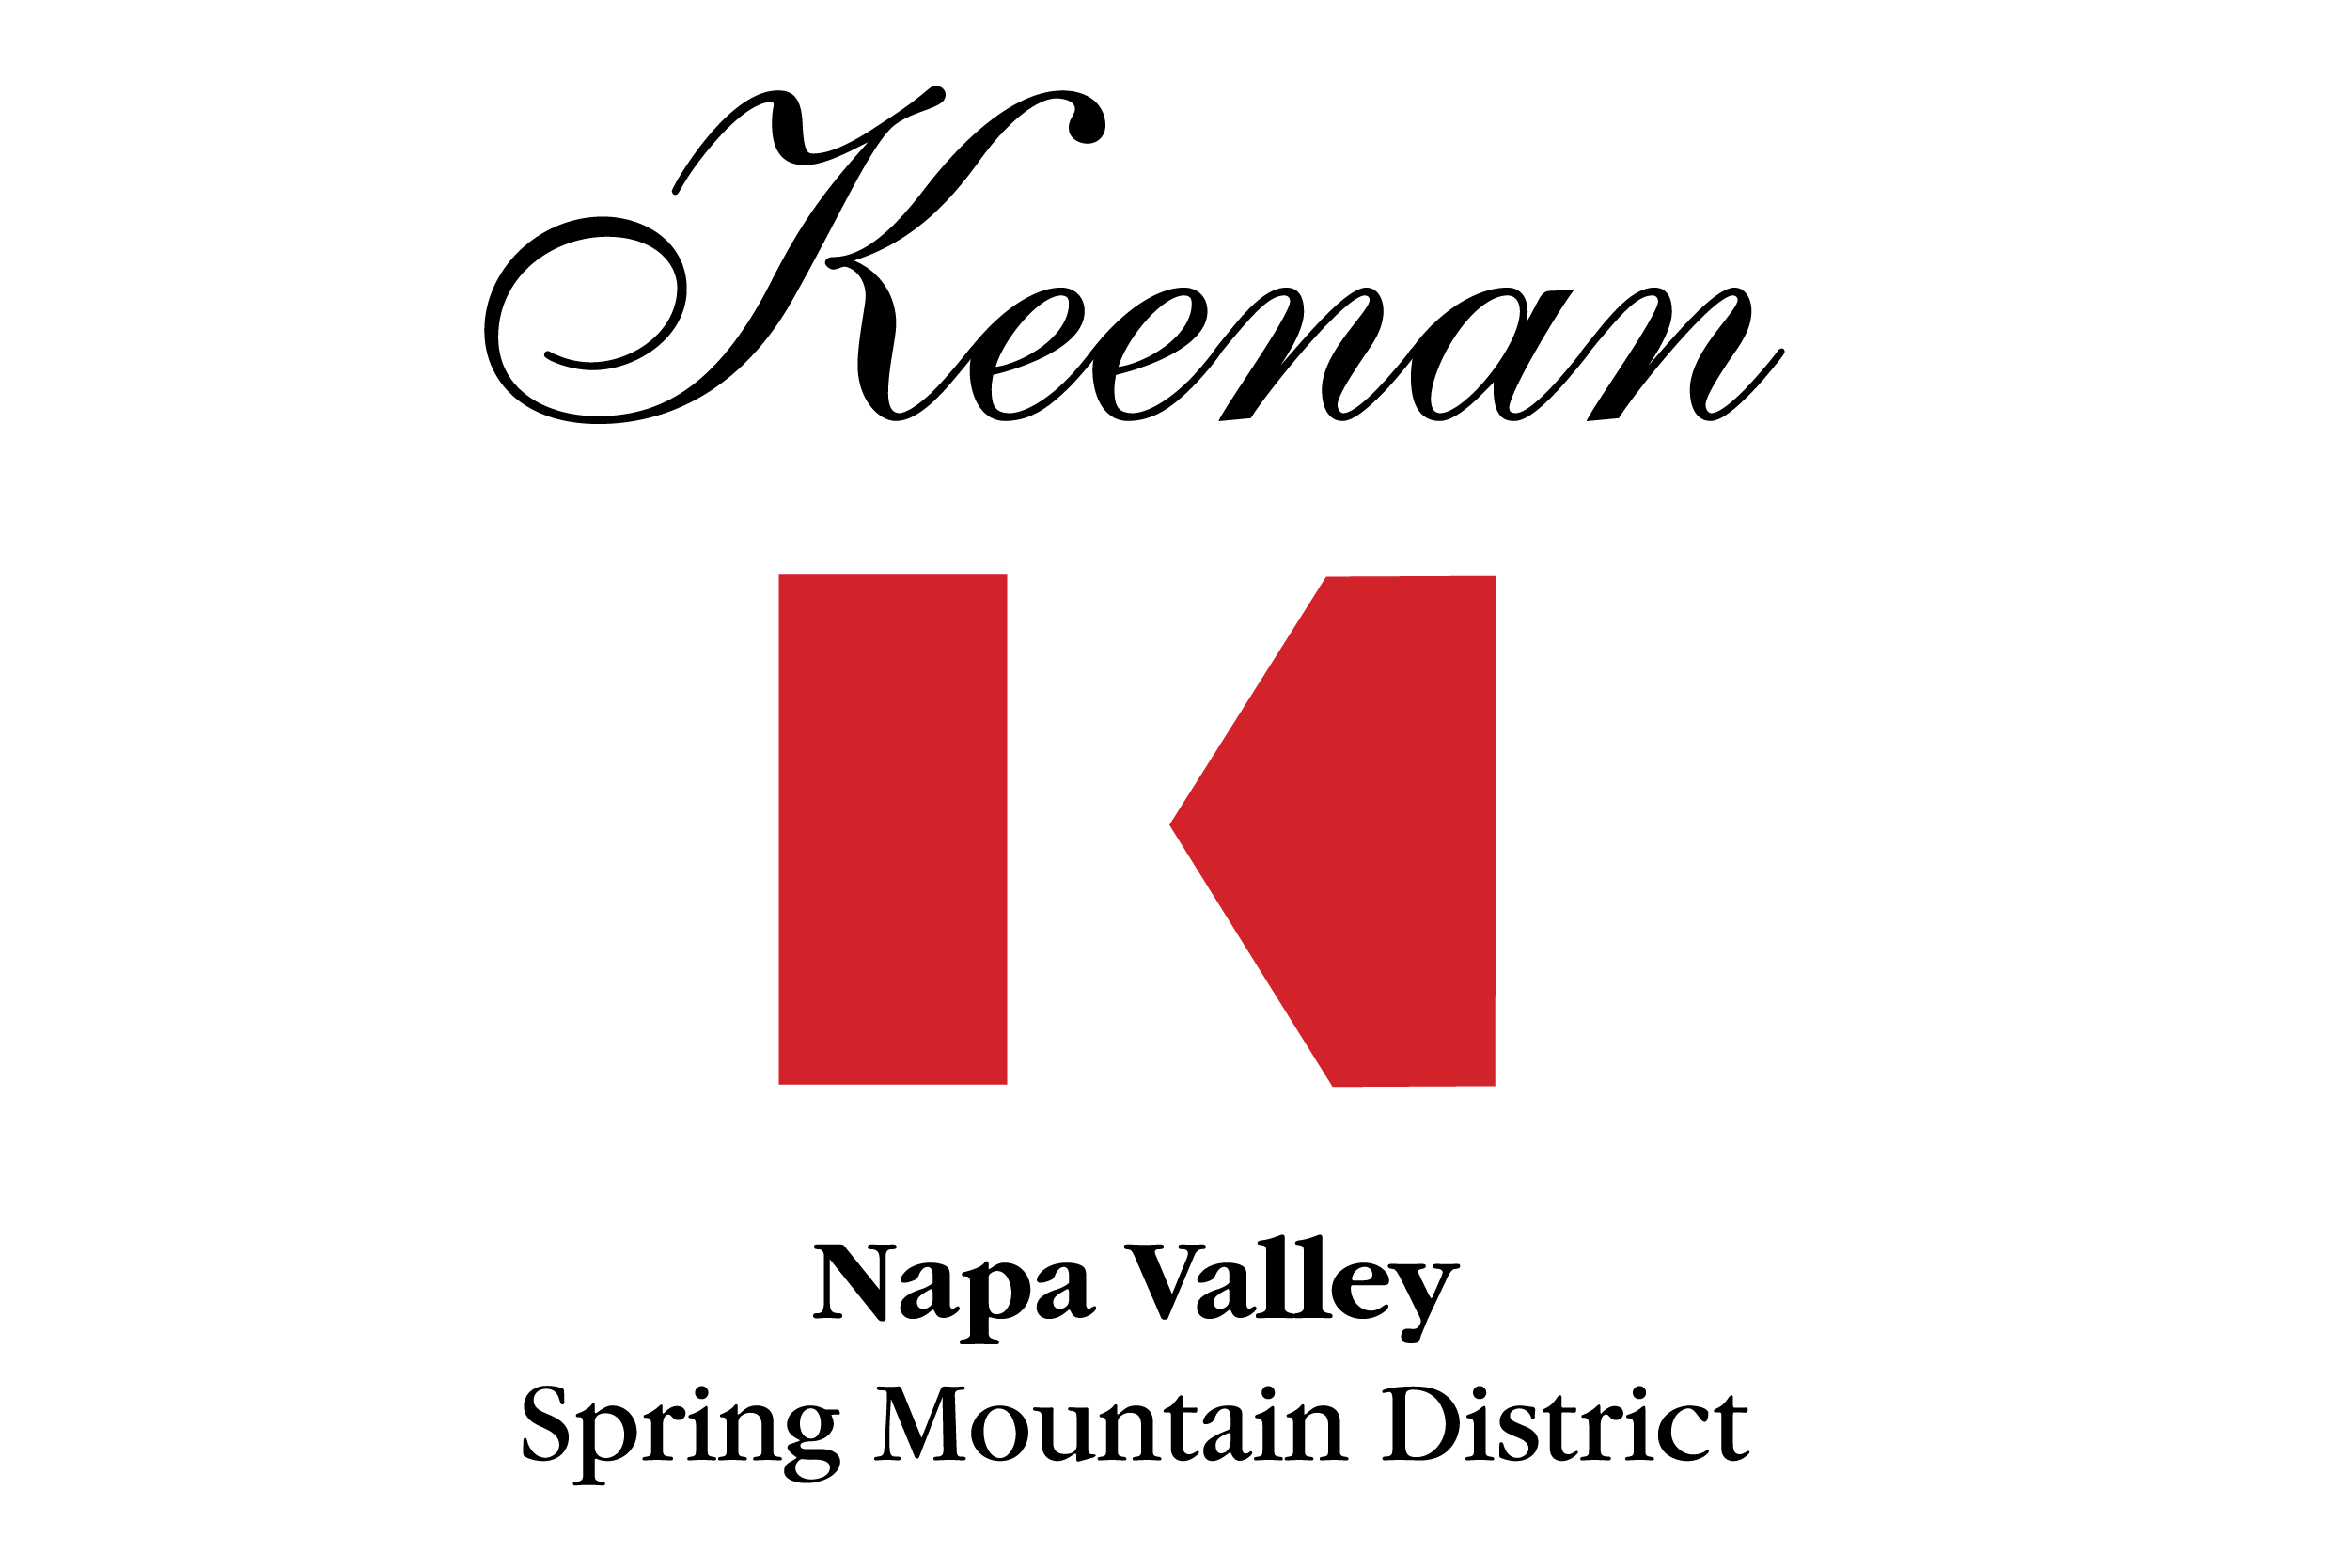 Robert Keenan logo-01.png